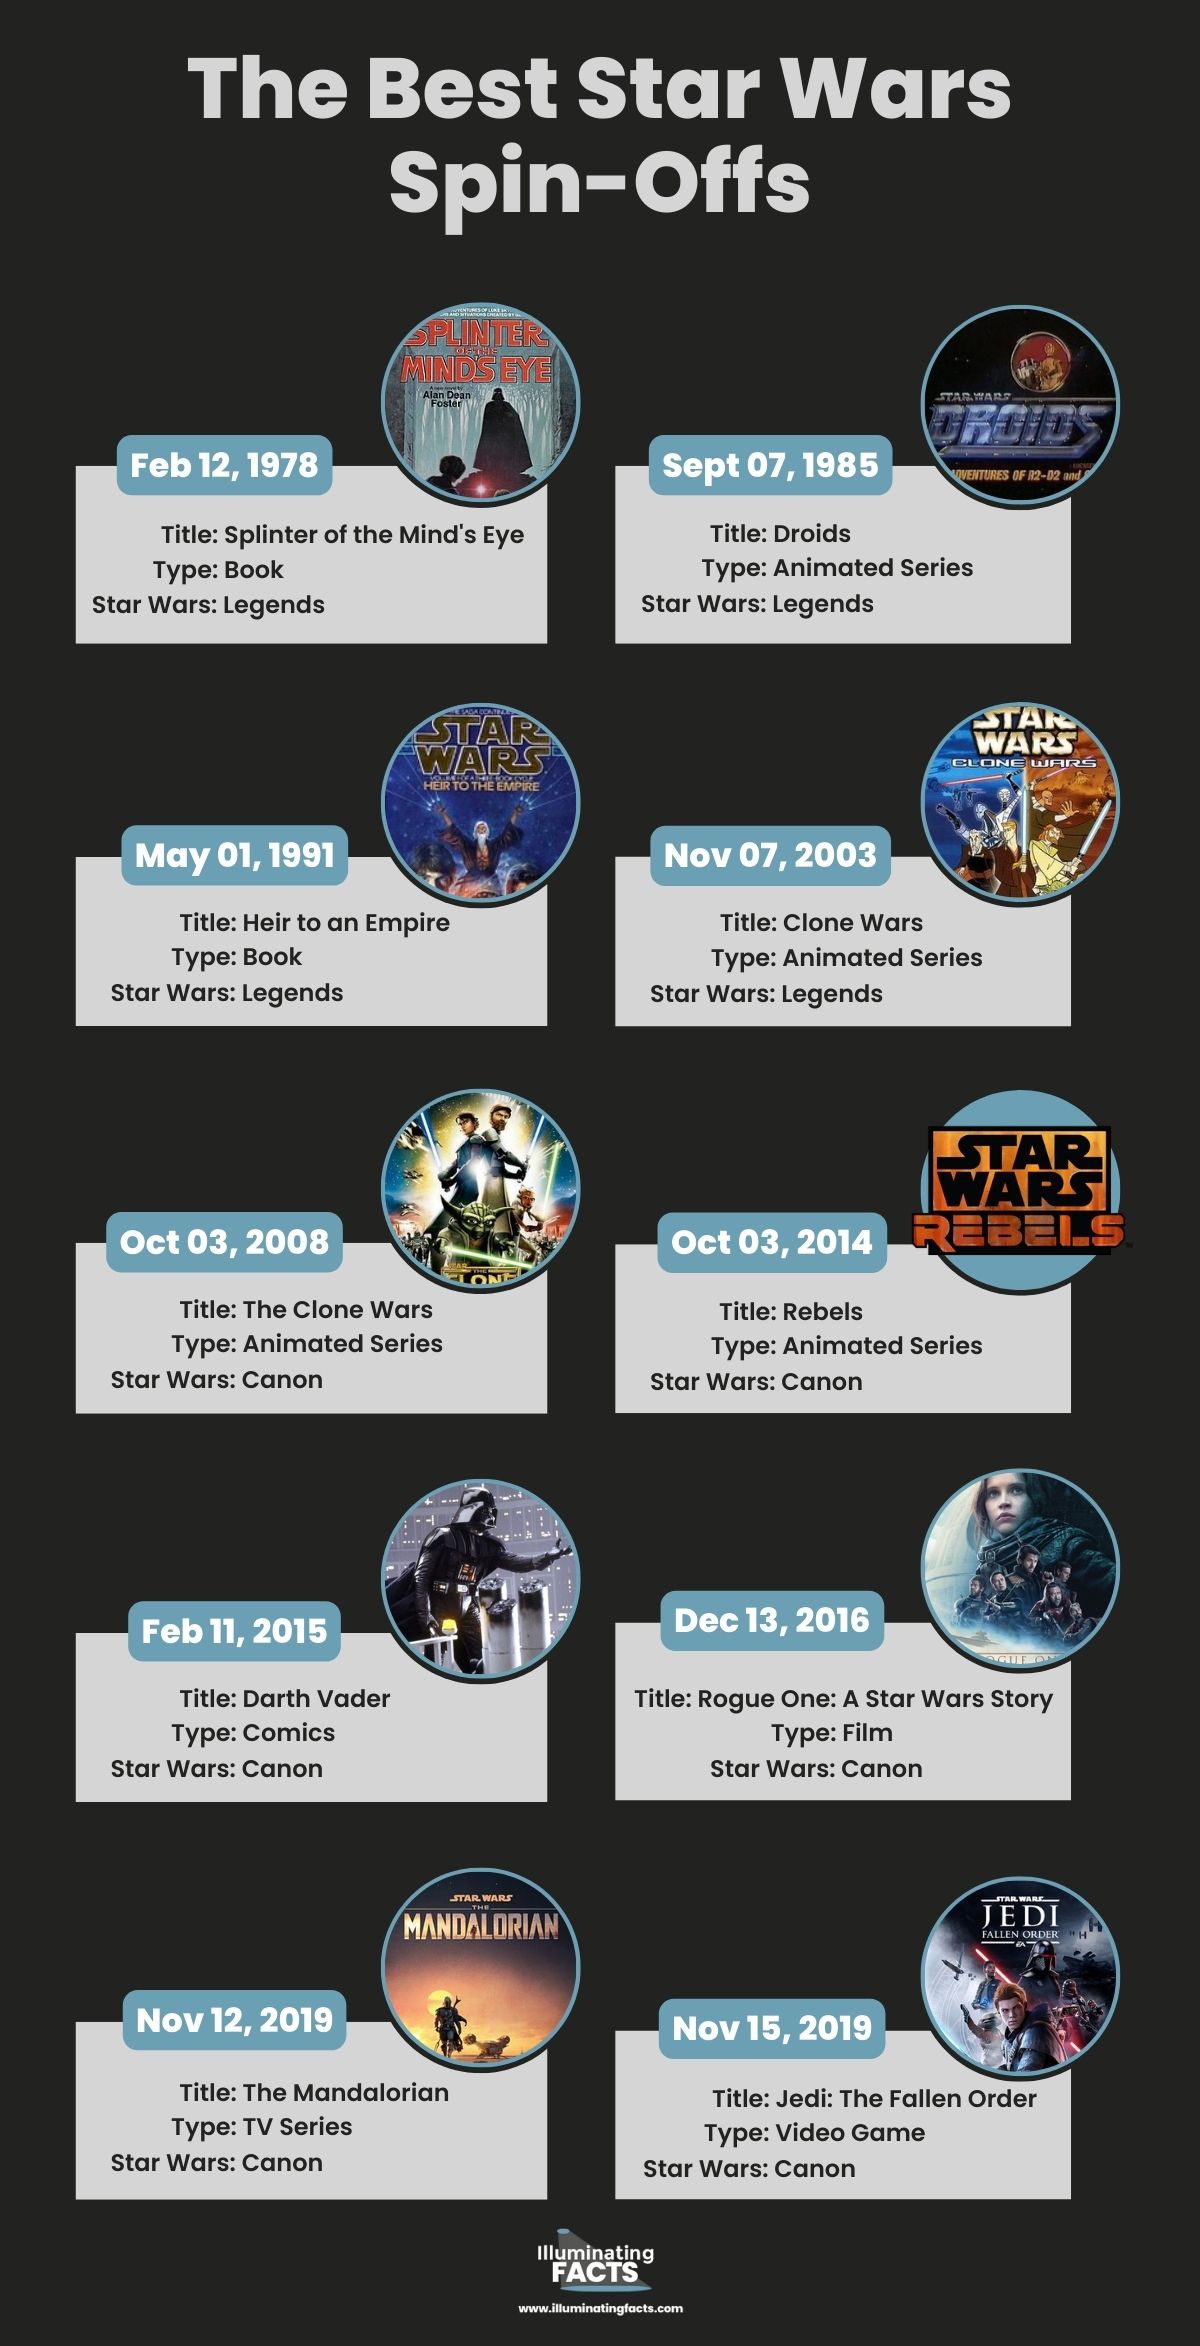 The Best Star Wars Spin-Offs